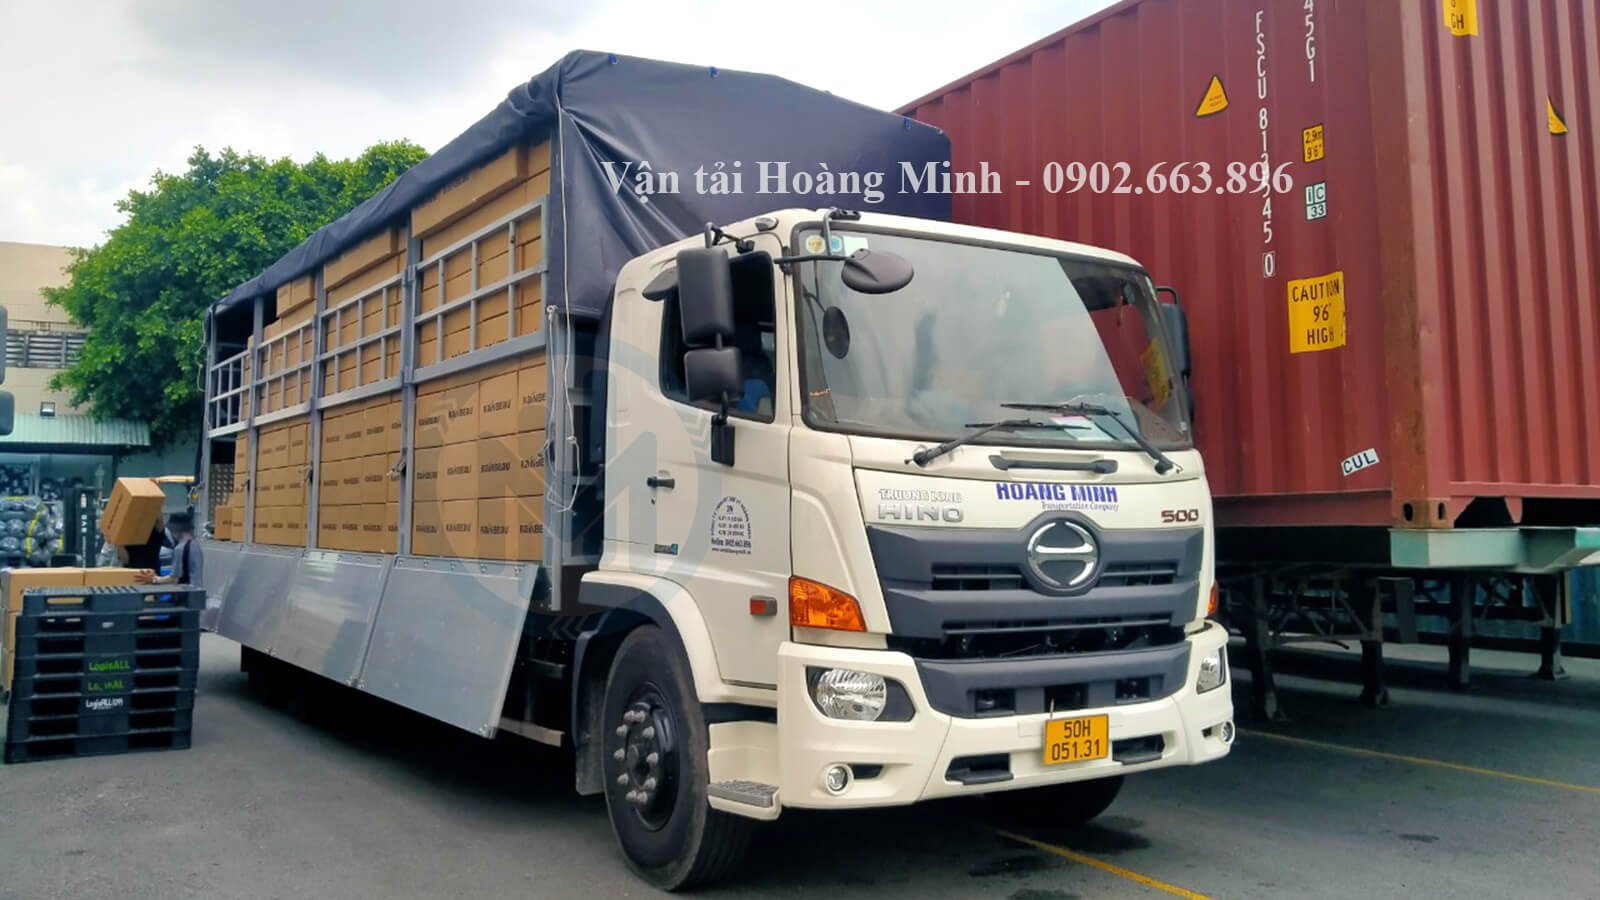 Lợi ích nhận được khi lựa chọn thuê xe tải chở hàng tại Vận tải Hoàng Minh